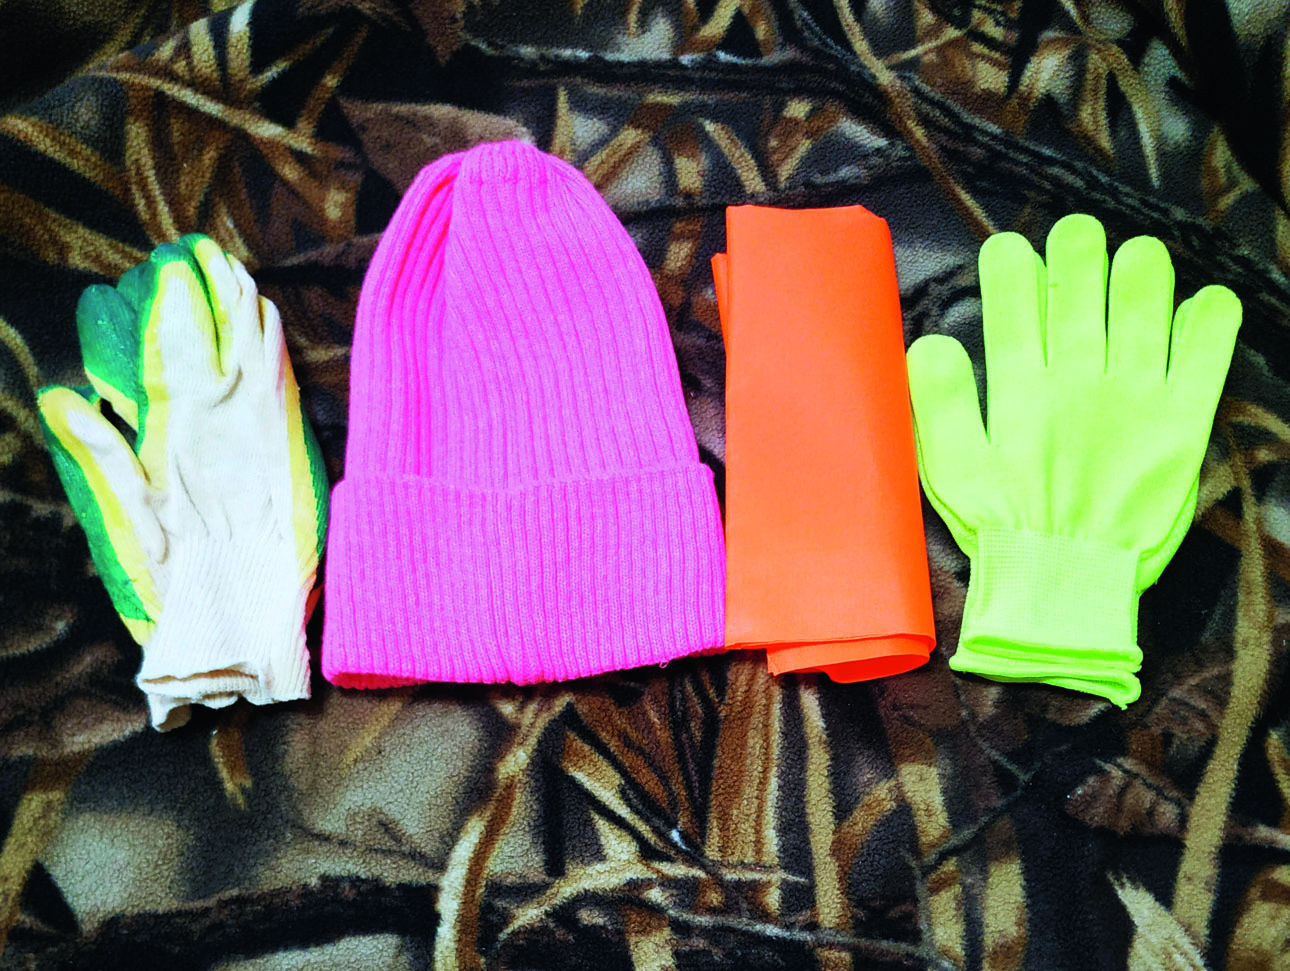 Изображение Шапка или косынка сигнального цвета помогут обозначить себя в зарослях, а перчатки защитят руки от холода и повреждений. Фото автора. 